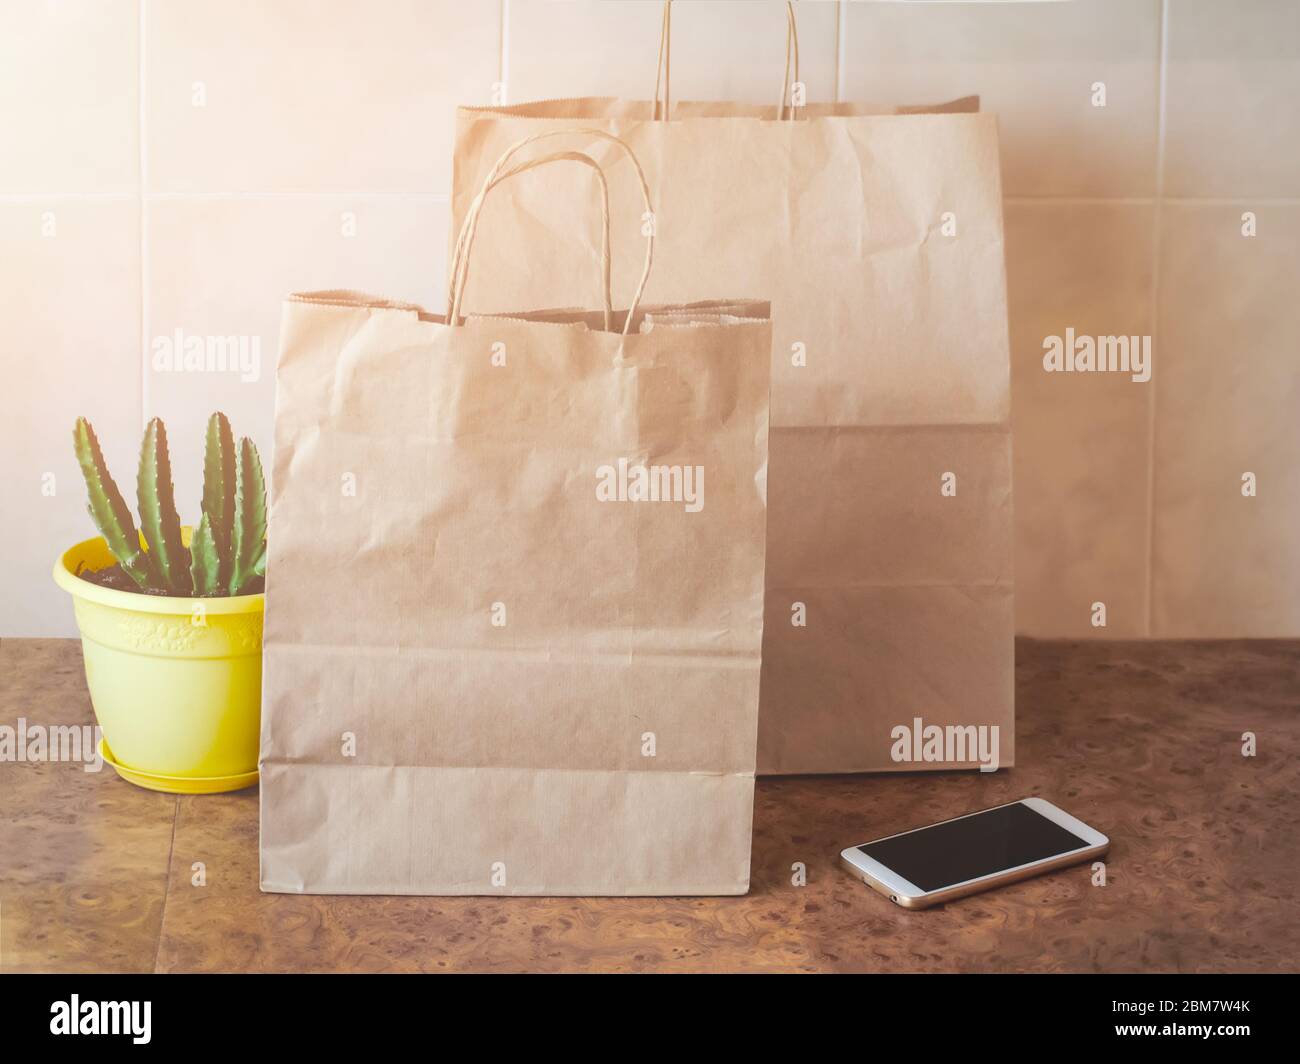 Papiertüten, Handy und eine Zimmerpflanze in einem gelben Topf auf einem Küchentisch. Online-Shopping und kontaktloses Lieferkonzept. Stockfoto